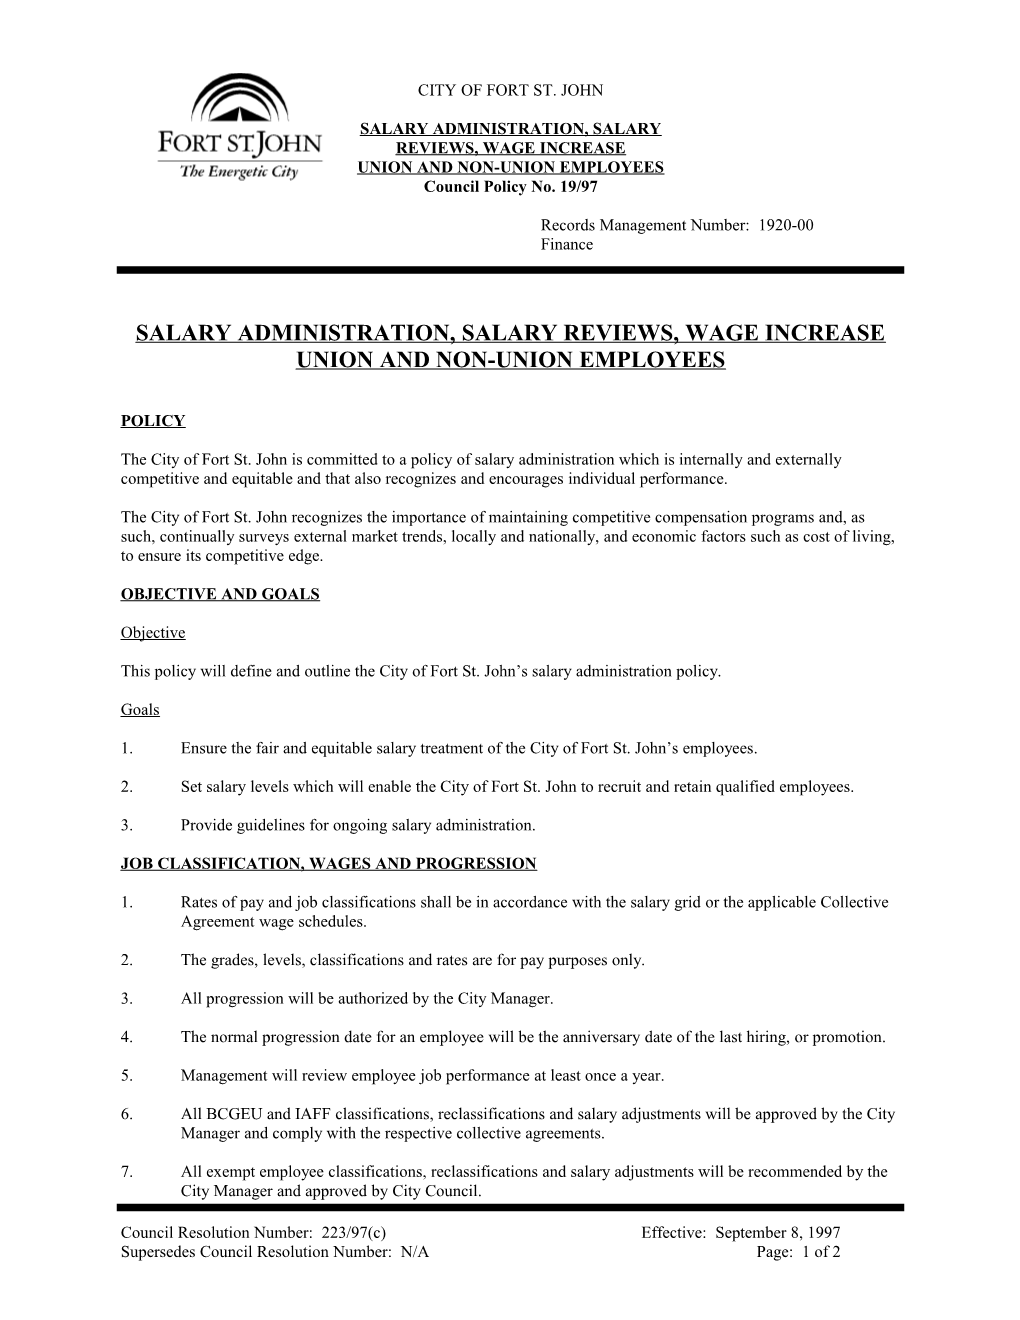 Salary Administration, Salary